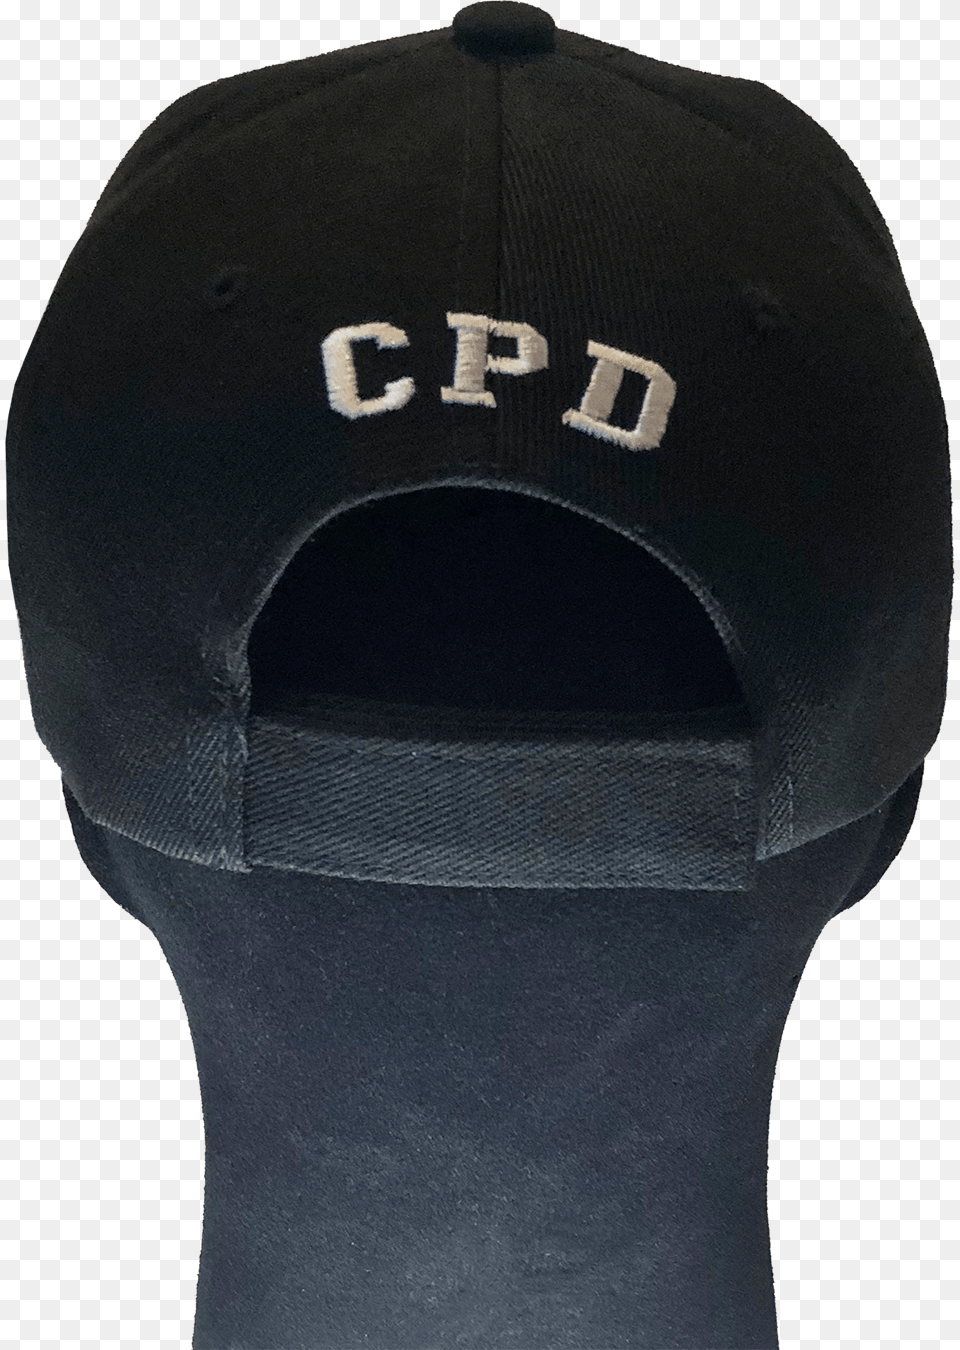 Cop Hat, Baseball Cap, Cap, Clothing, Adult Free Png